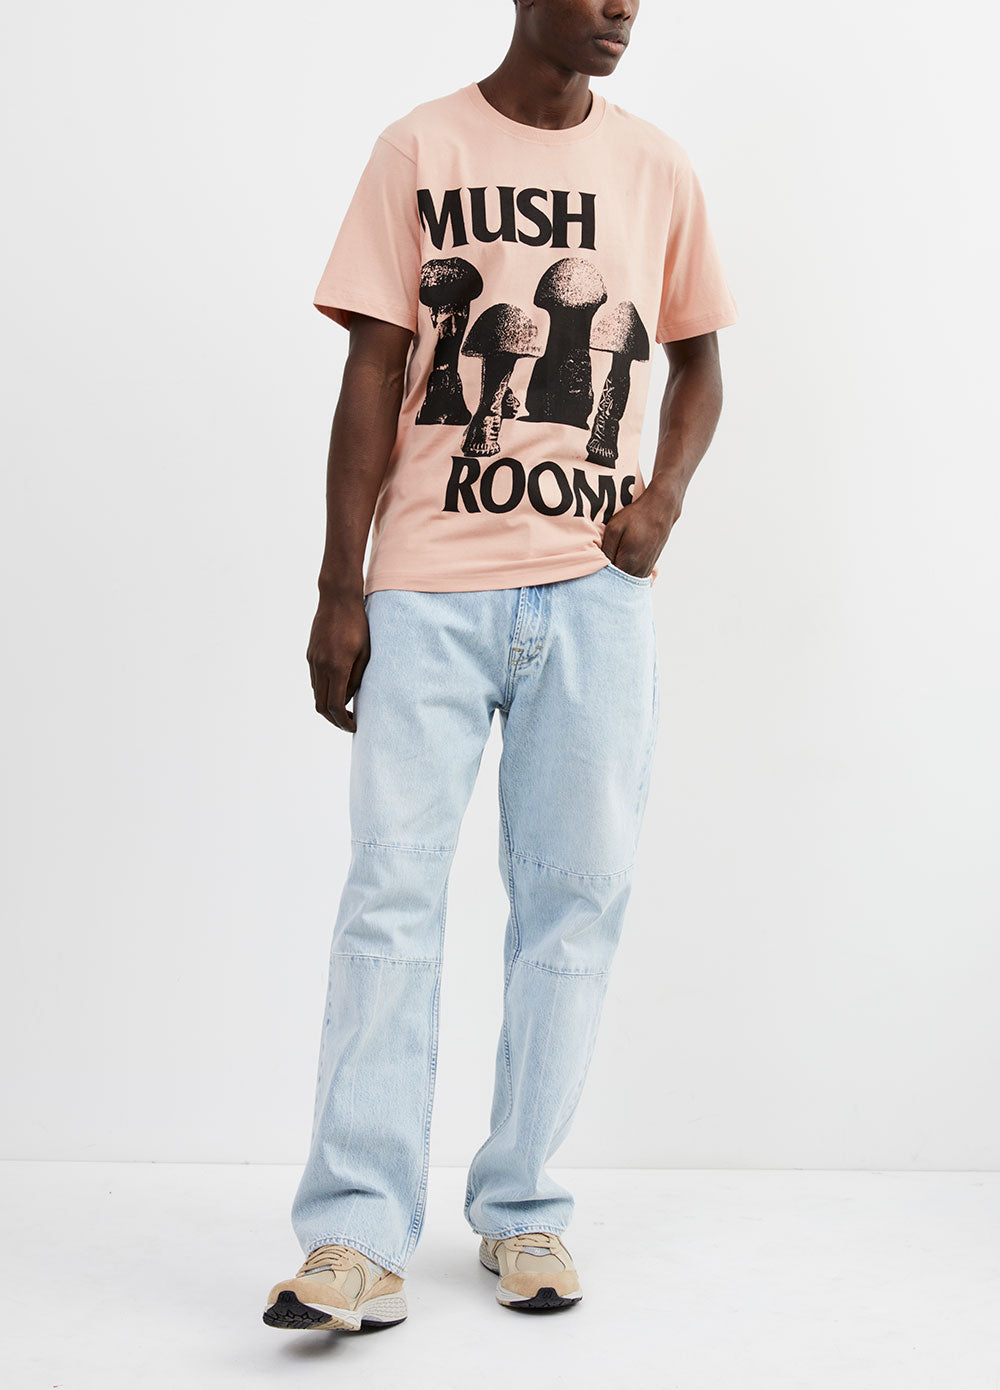 Mush Rooms T-Shirt